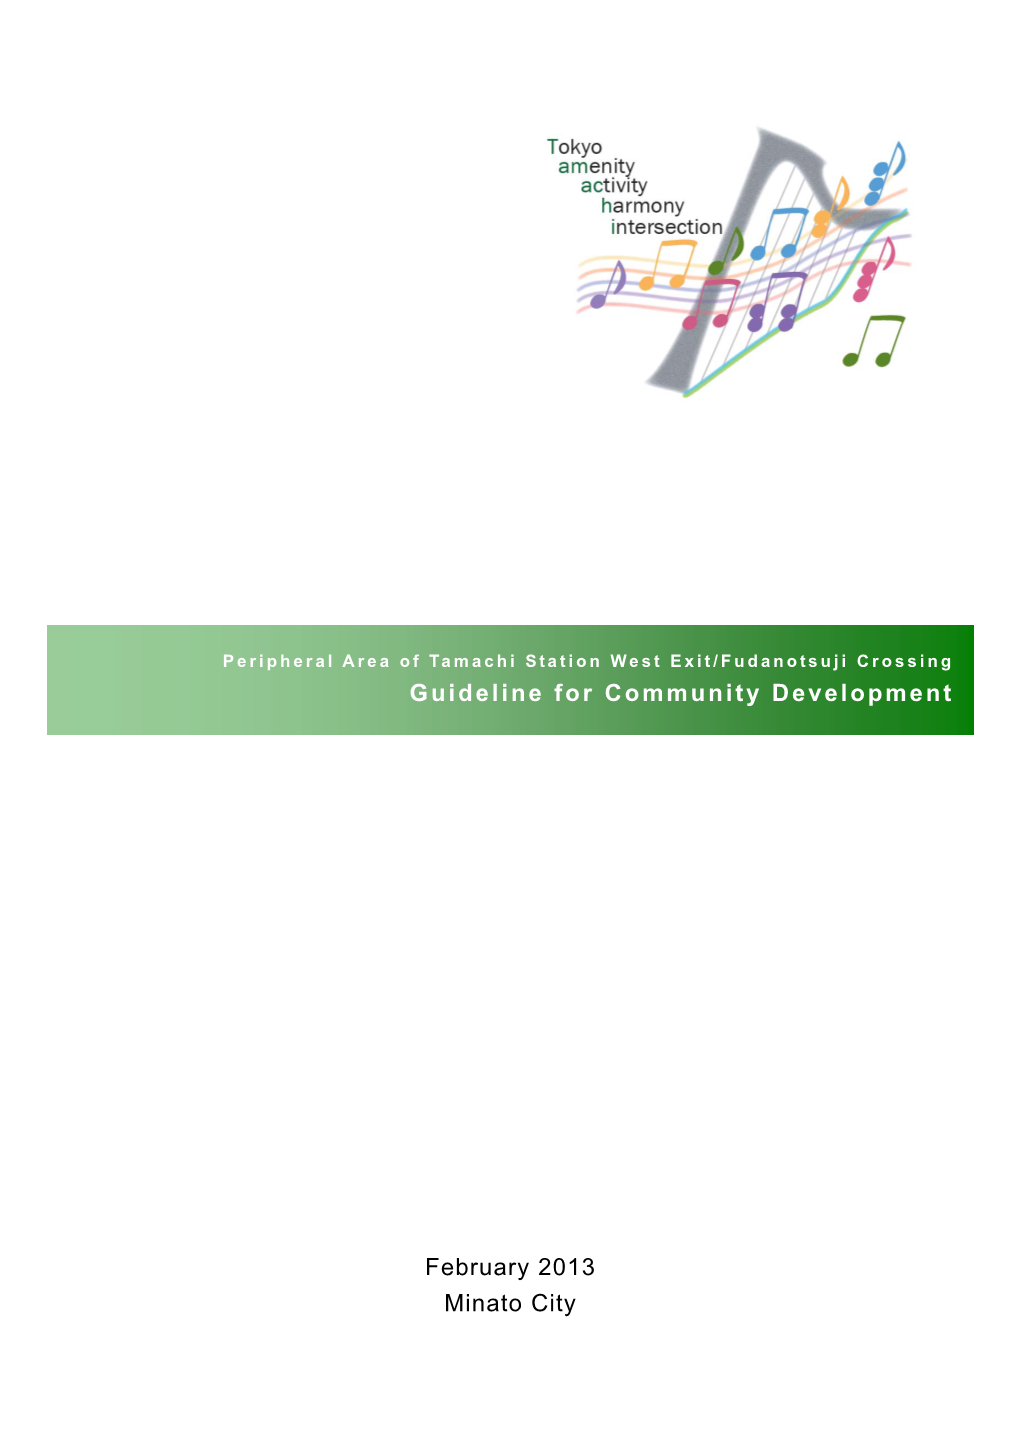 Guideline for Community Development